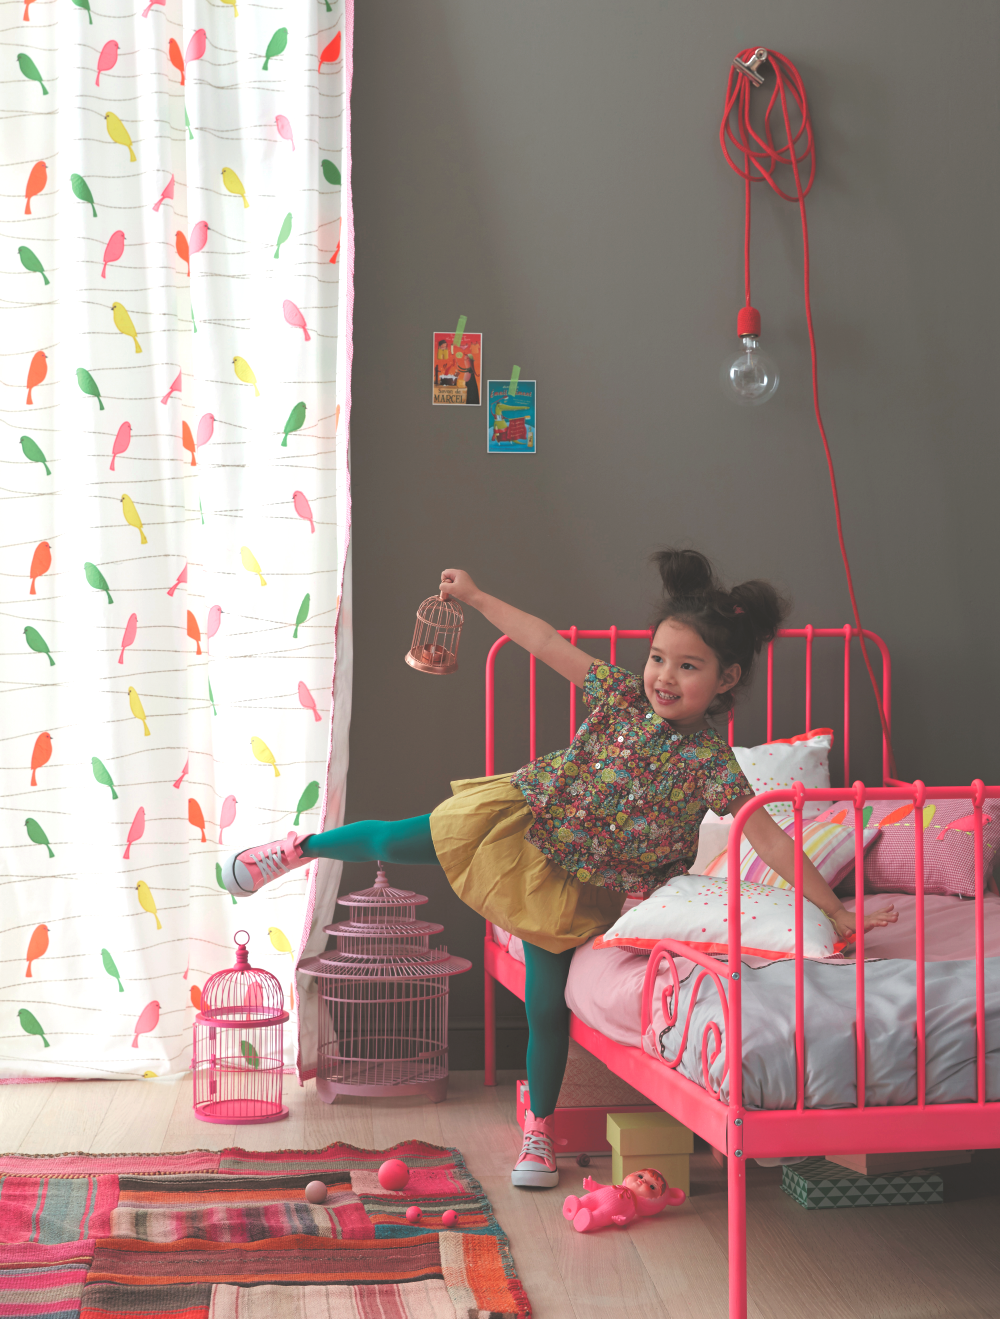 Bunter Stoffmix für Mädchenzimmer #mädchenzimmer #kinderzimmerdeko ©Camengo